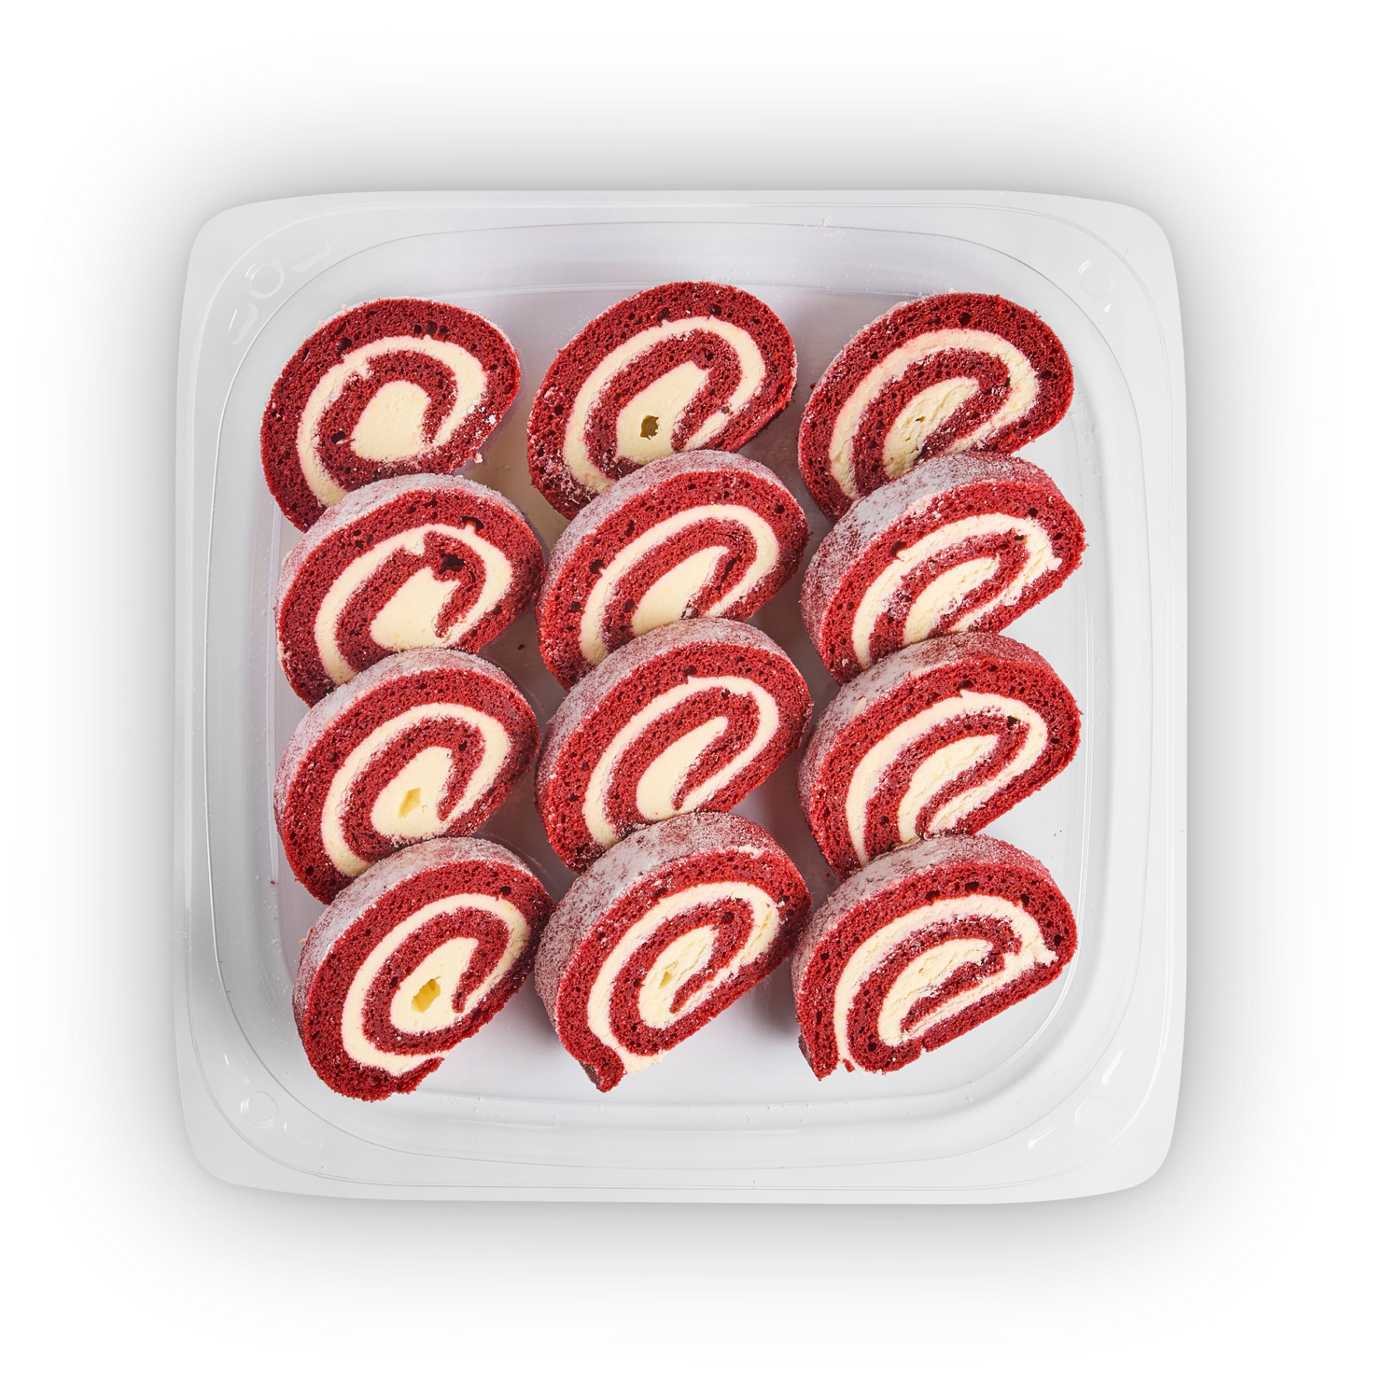 H-E-B Bakery Party Tray - Red Velvet Cake Rolls; image 2 of 3